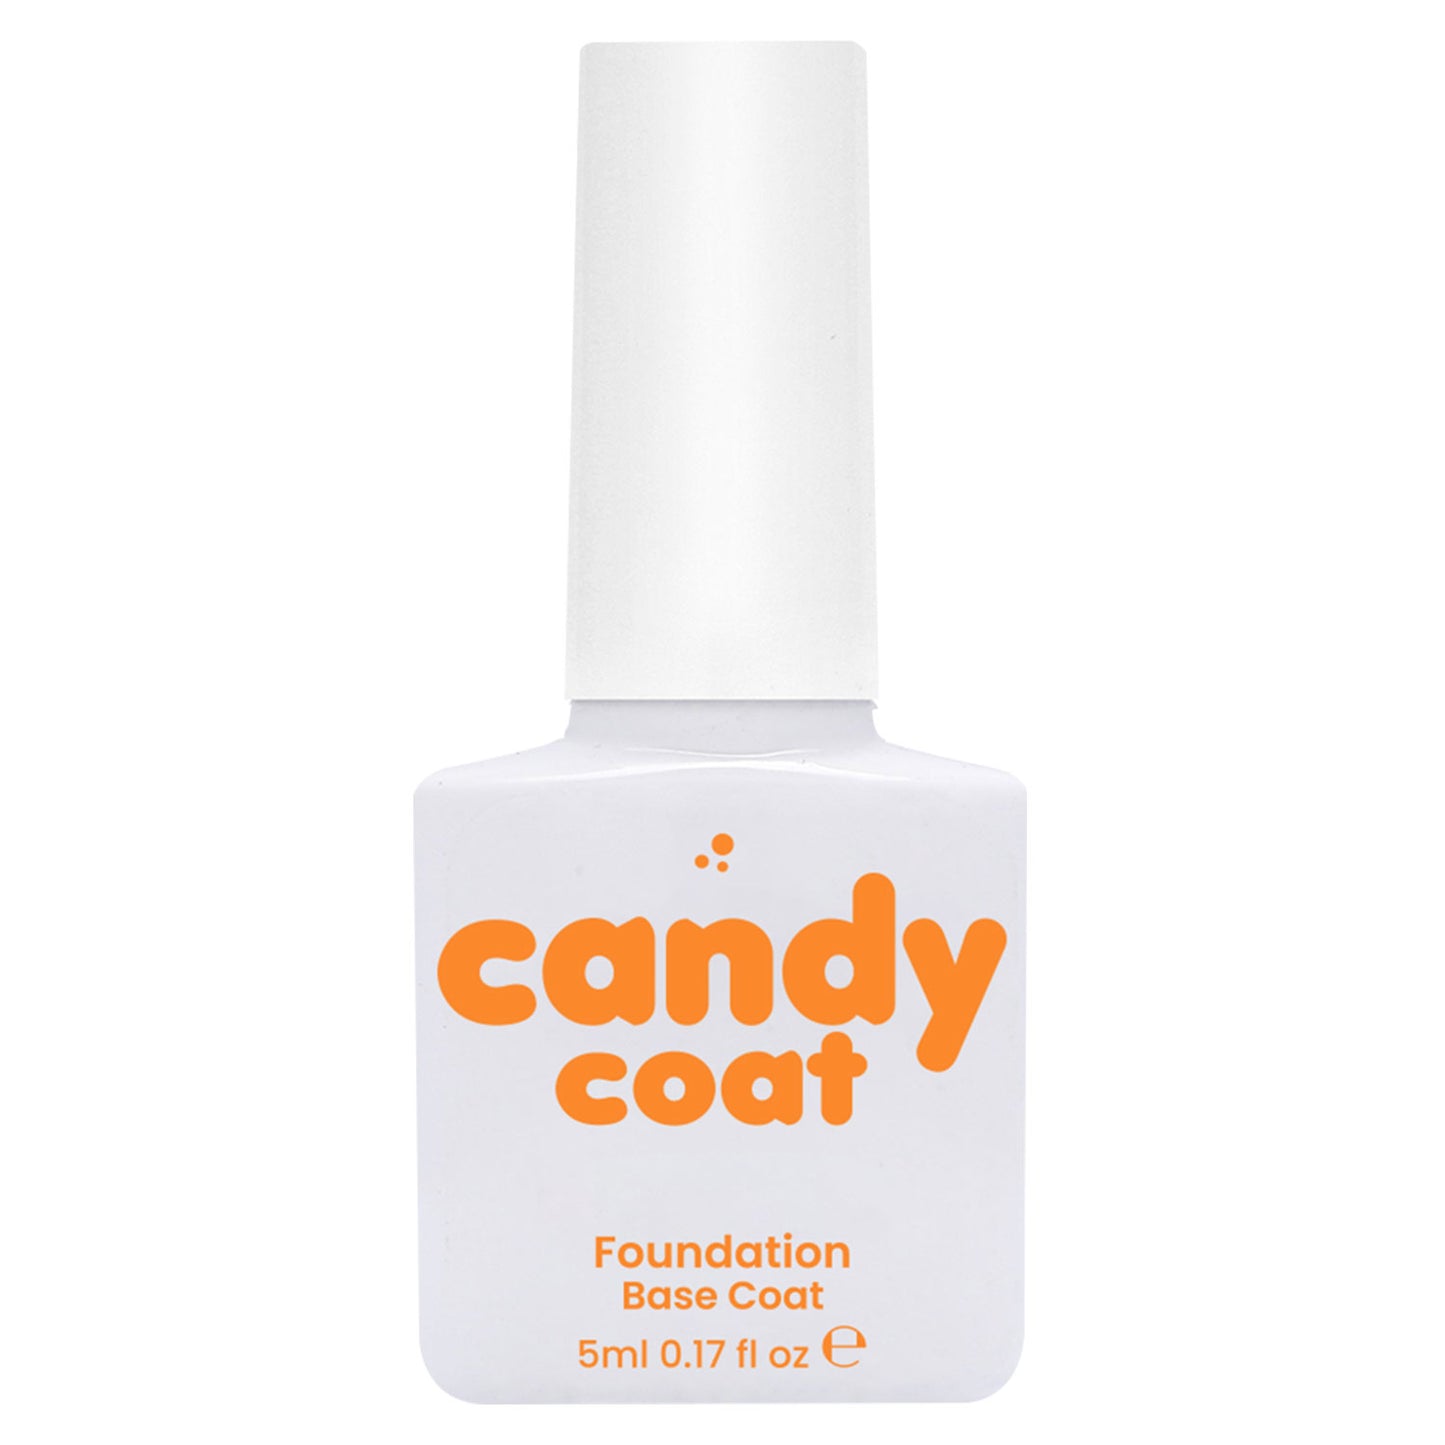 Candy Coat - HEMA Free Foundation Base Coat 5ml - Candy Coat